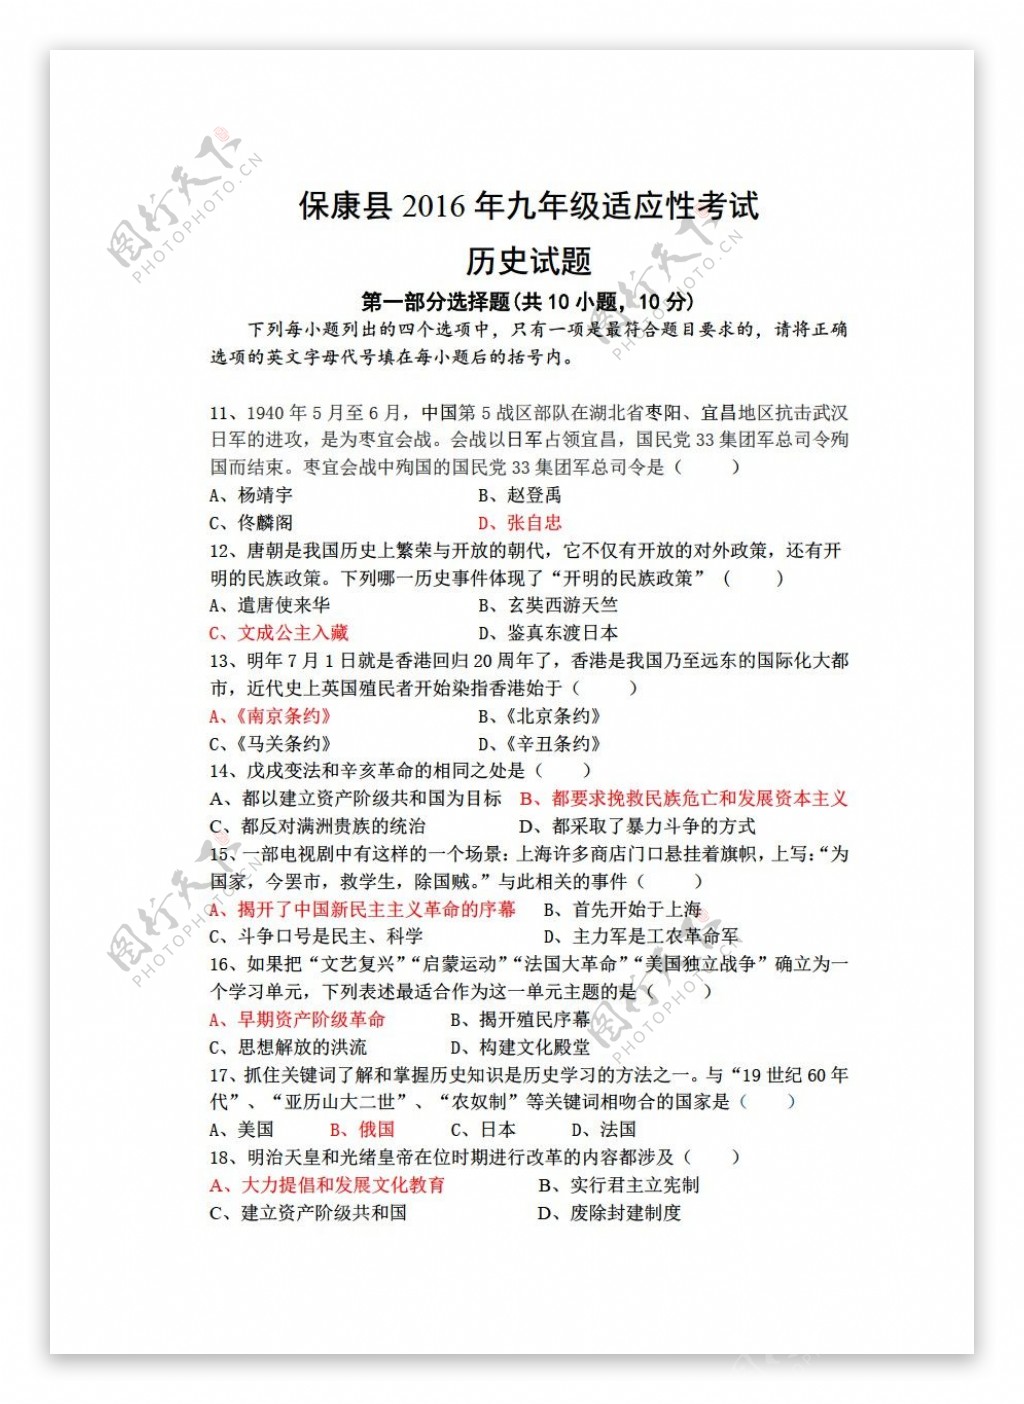 中考专区历史保康县2016年九年级适应性考试试题